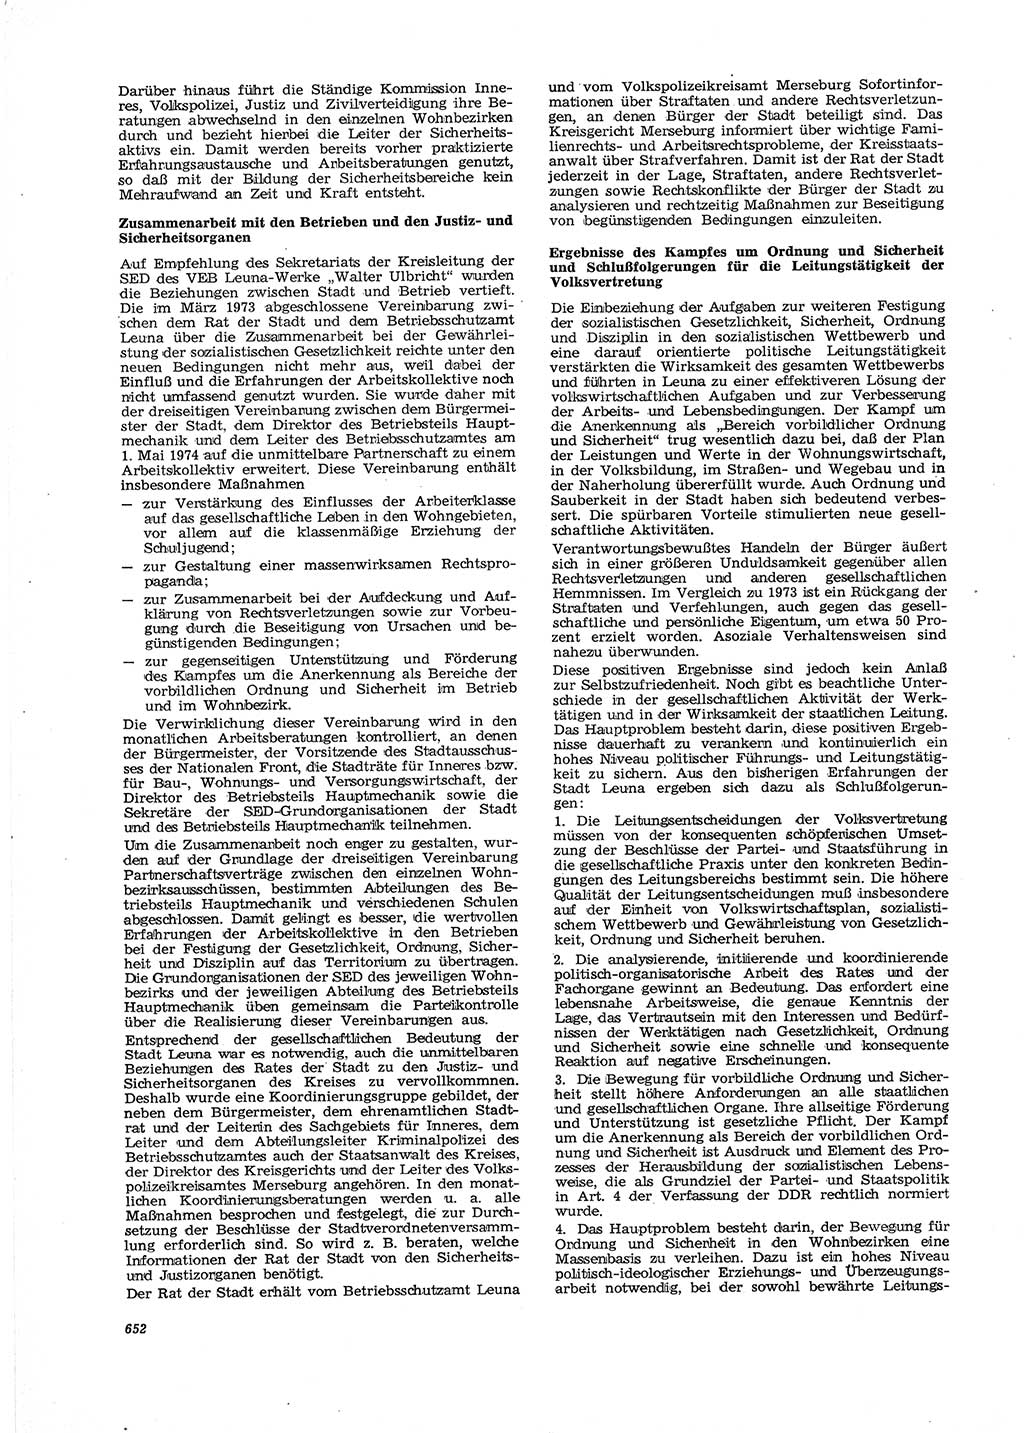 Neue Justiz (NJ), Zeitschrift für Recht und Rechtswissenschaft [Deutsche Demokratische Republik (DDR)], 29. Jahrgang 1975, Seite 652 (NJ DDR 1975, S. 652)